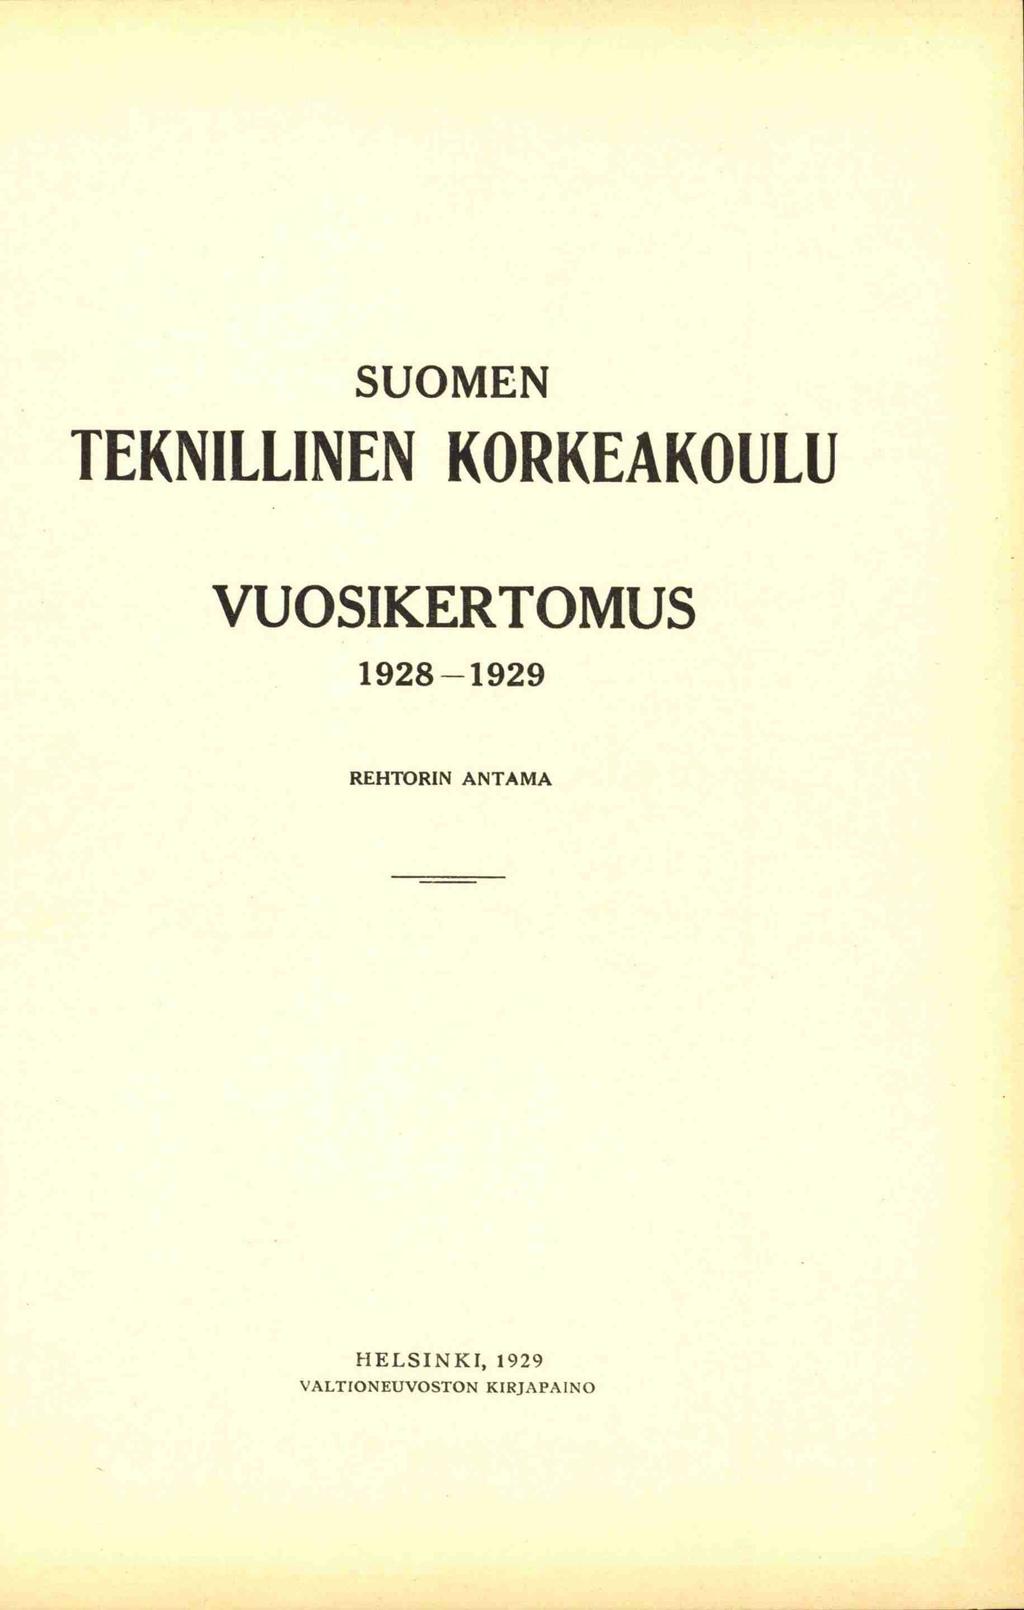 SUOMEN TEKNILLINEN KORKEAKOULU VUOSIKERTOMUS 1928-1929